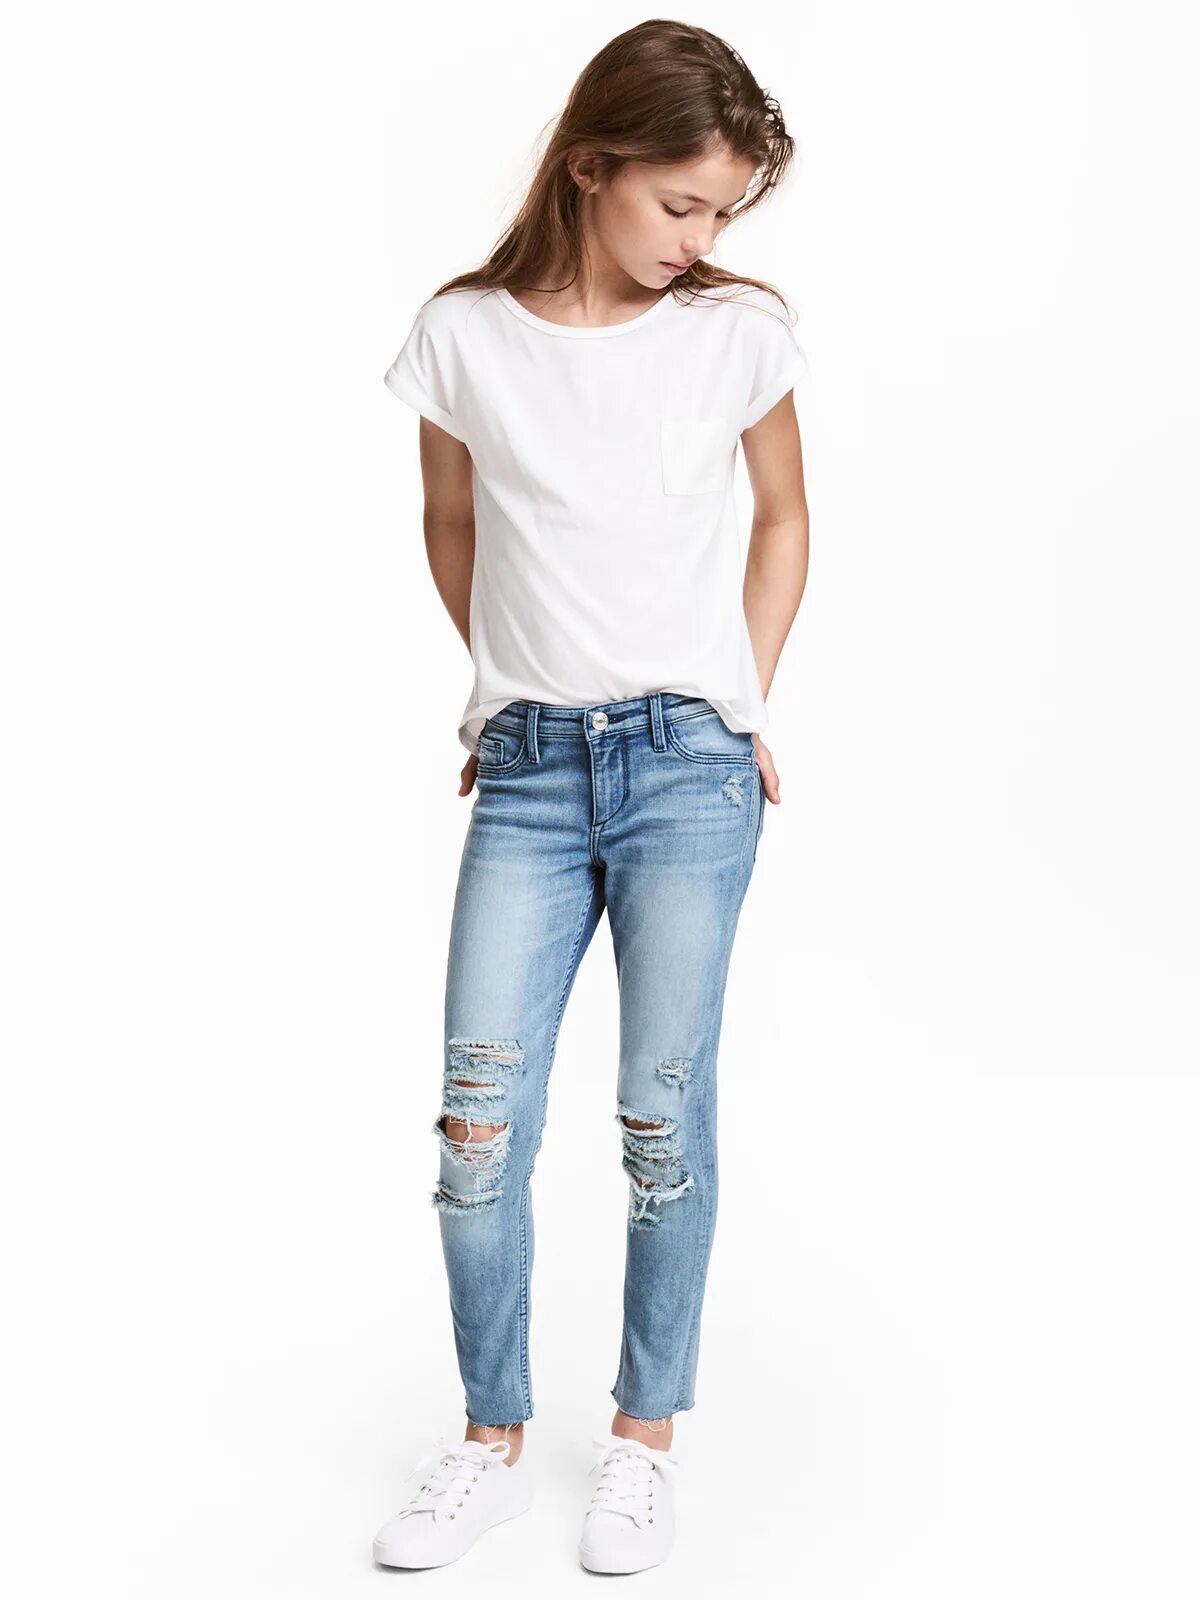 Девочки джинсах каталог. Джинсы для девочек. Светлые джинсы для детей. Светлые джинсы для девочек. Голубые джинсы для девочек.